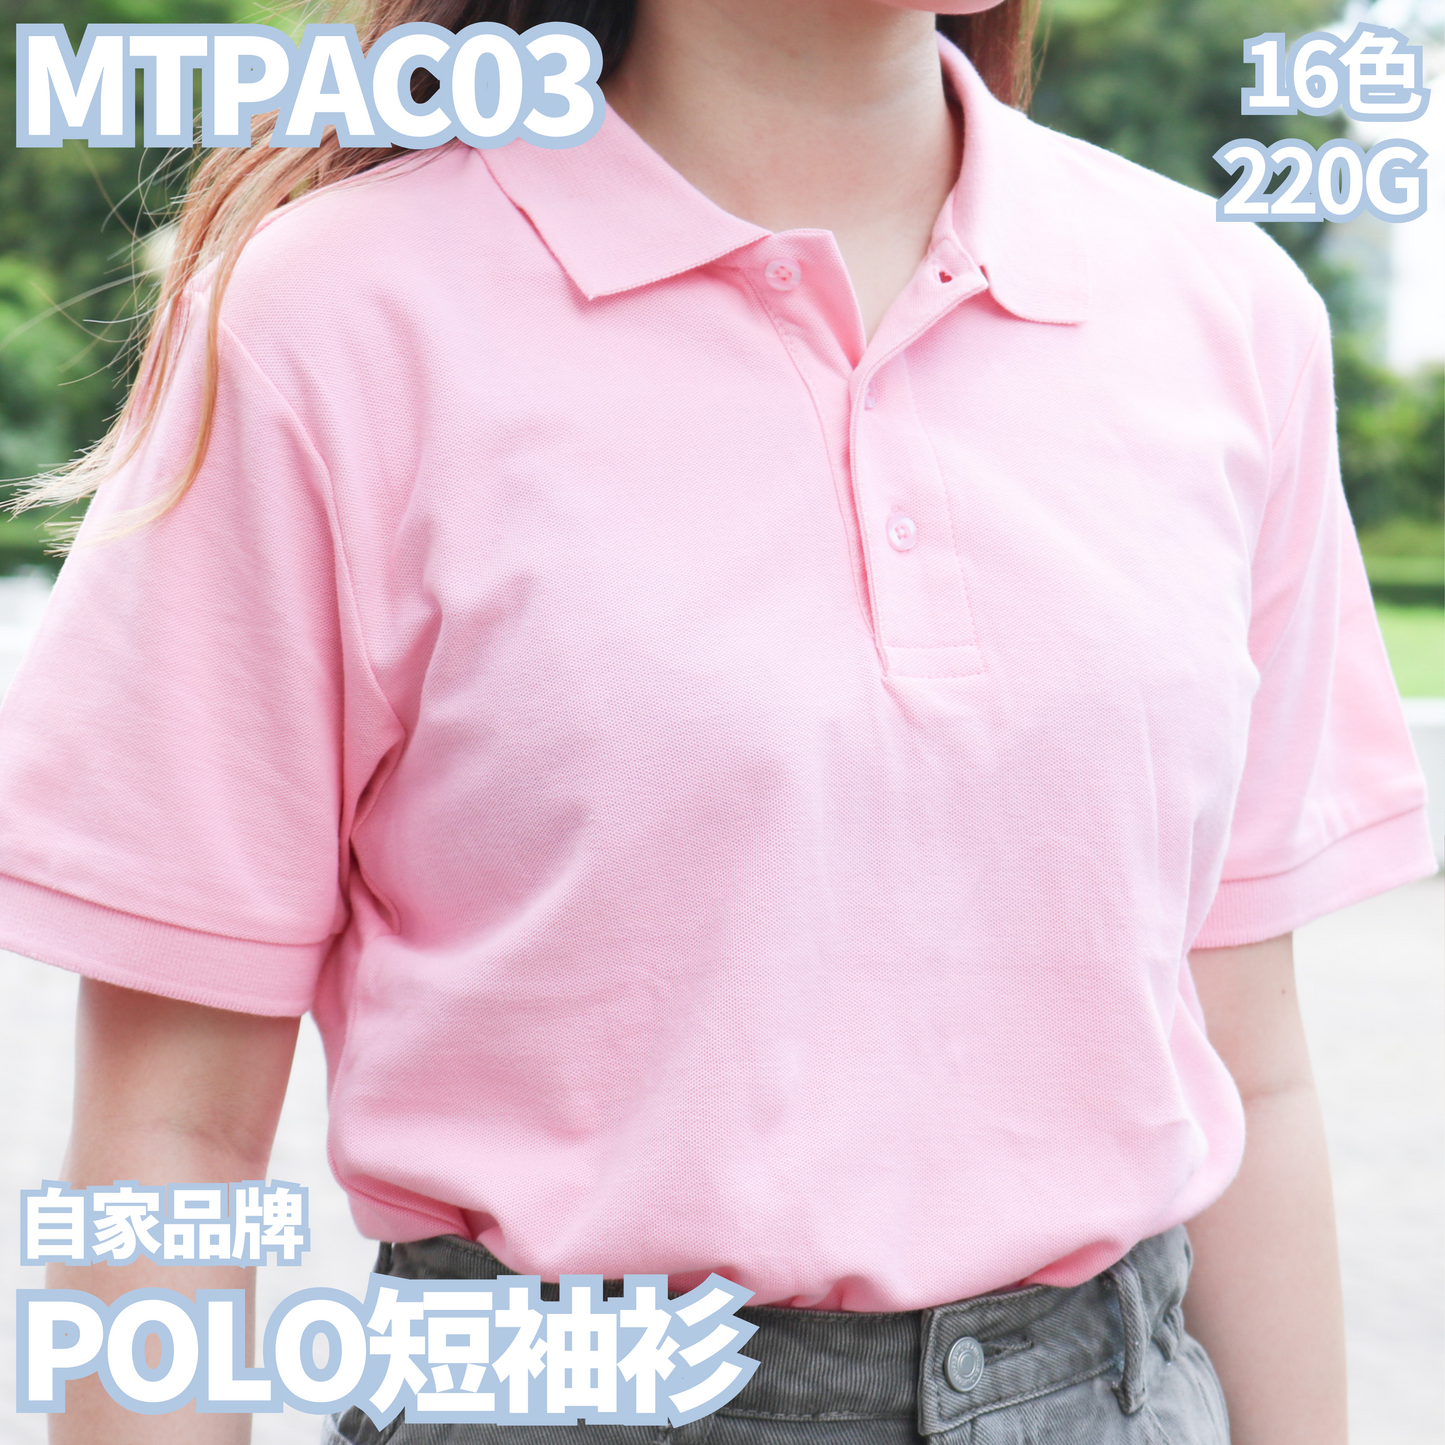 MTPAC03 220克POLO短袖衫